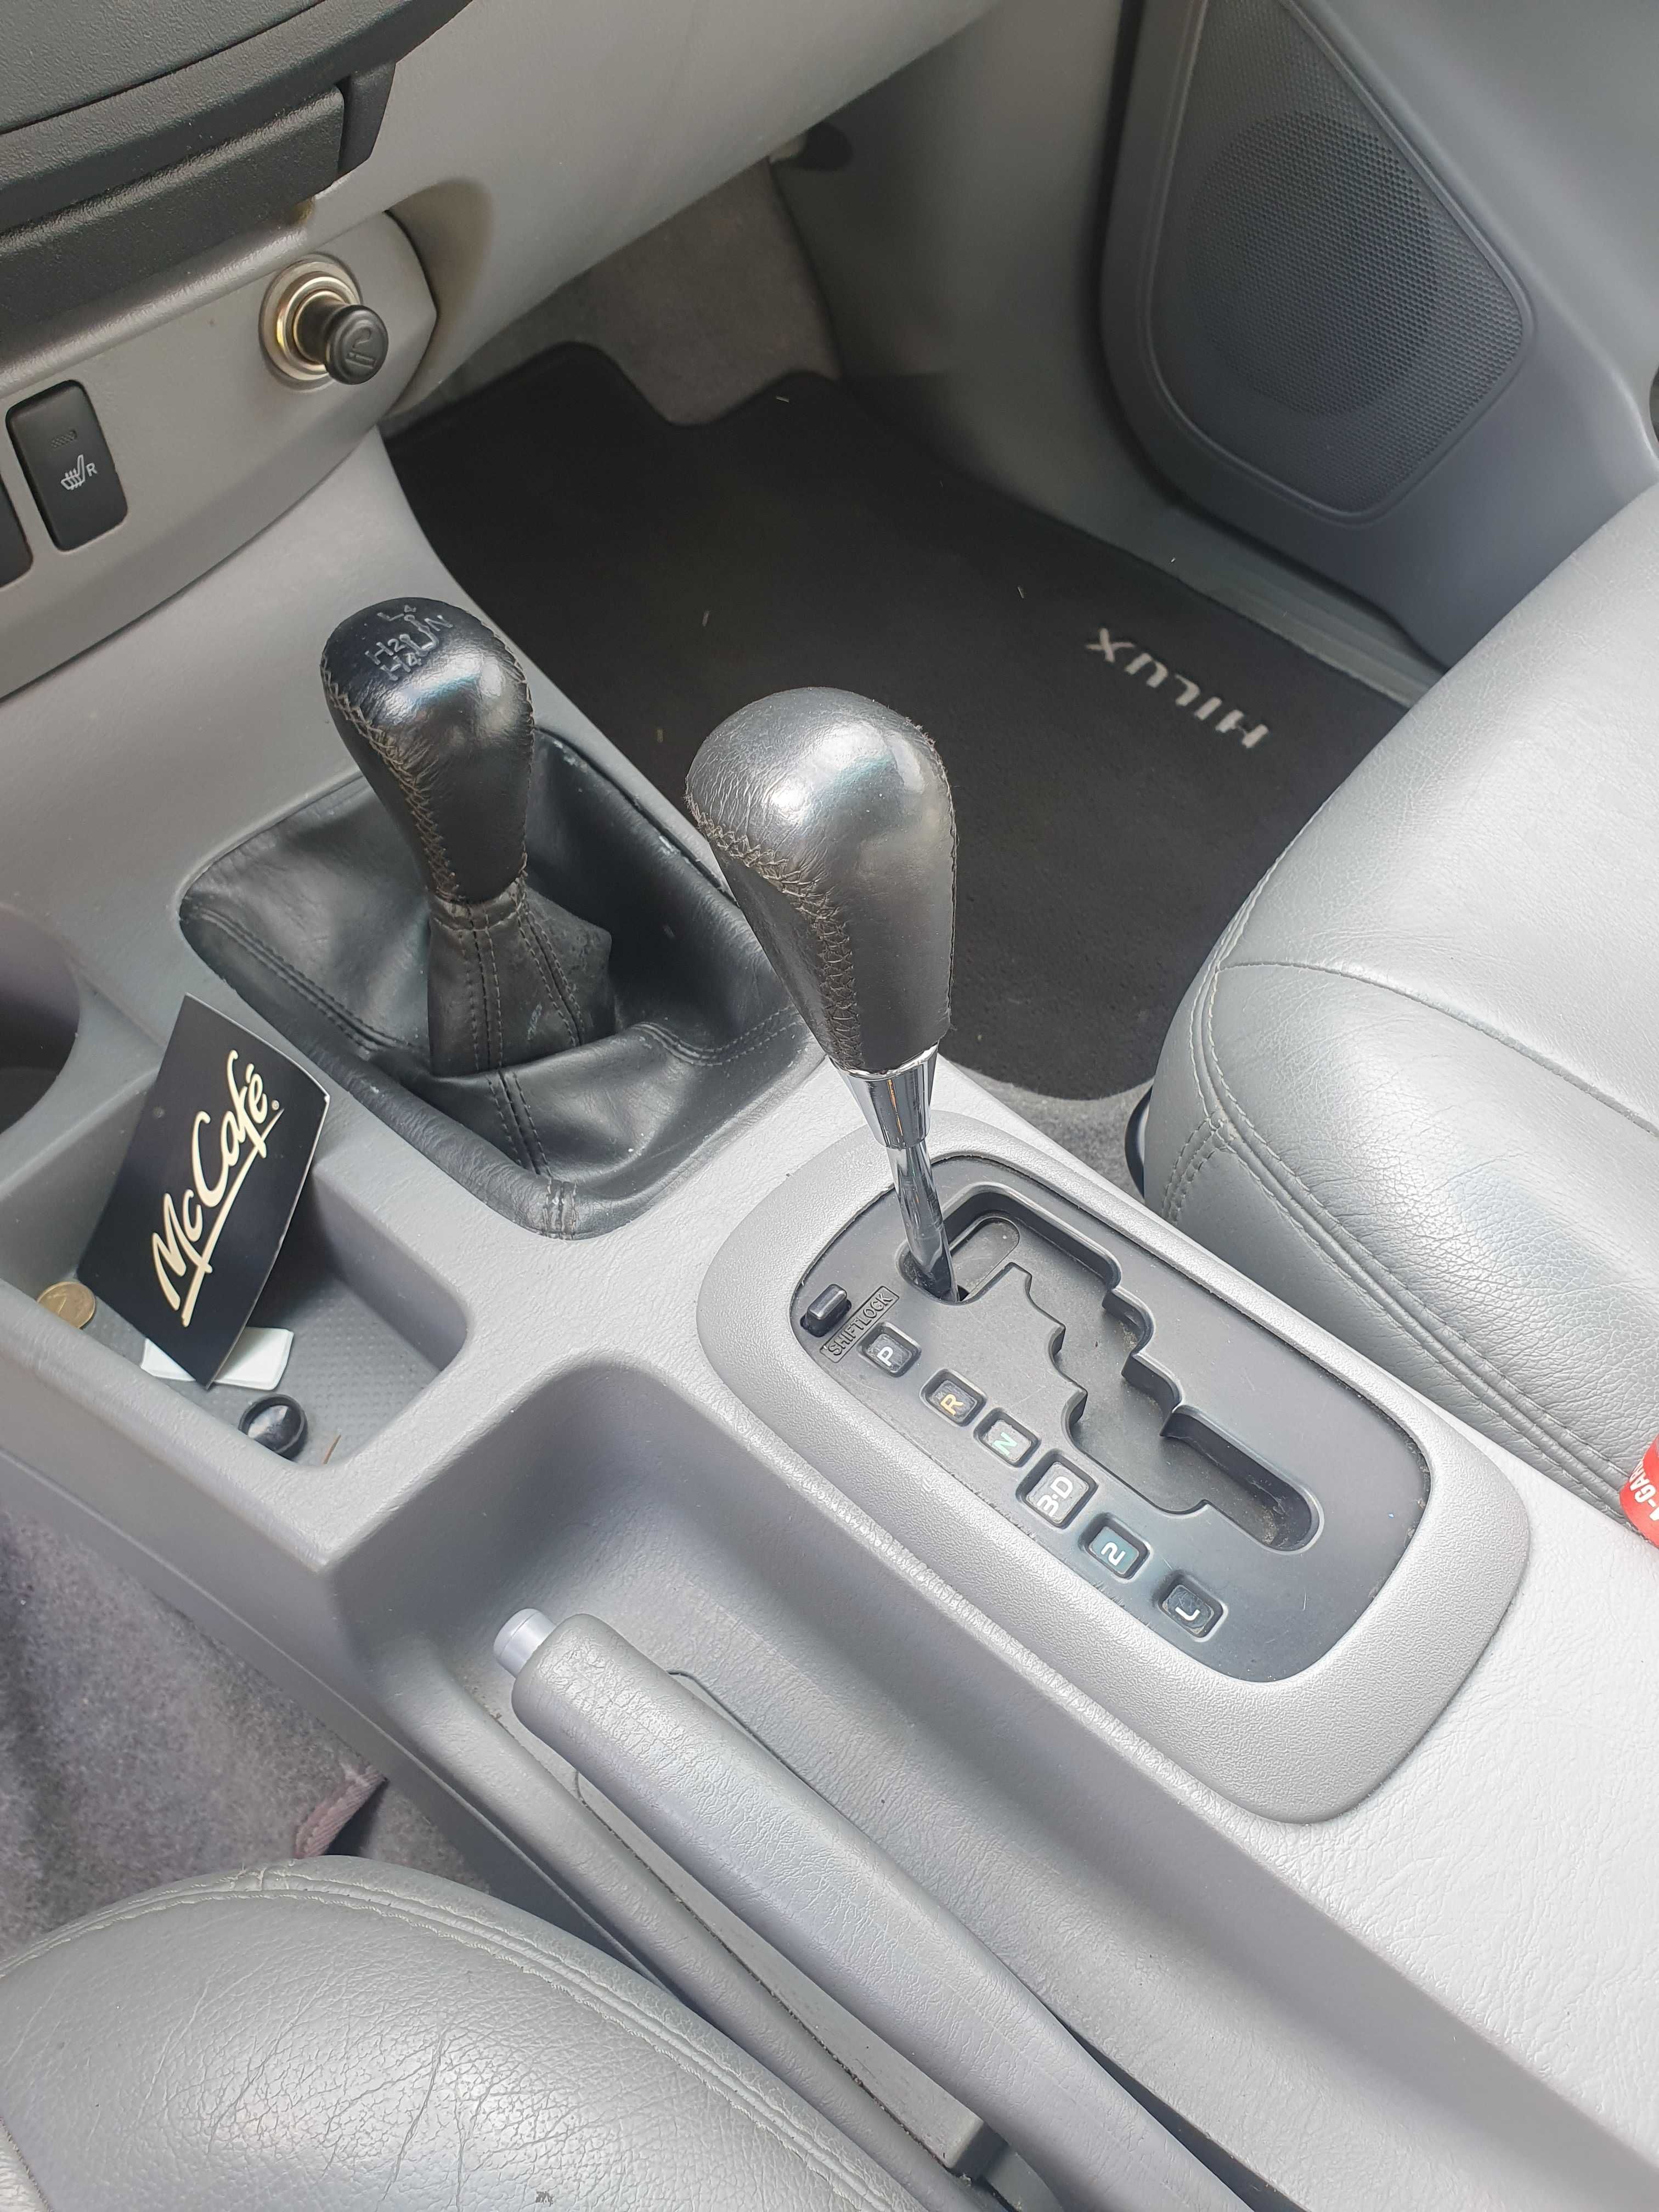 Toyota HILUX 3.0 d4d automat 4x4 lift klimatyzacja skórzane fotele